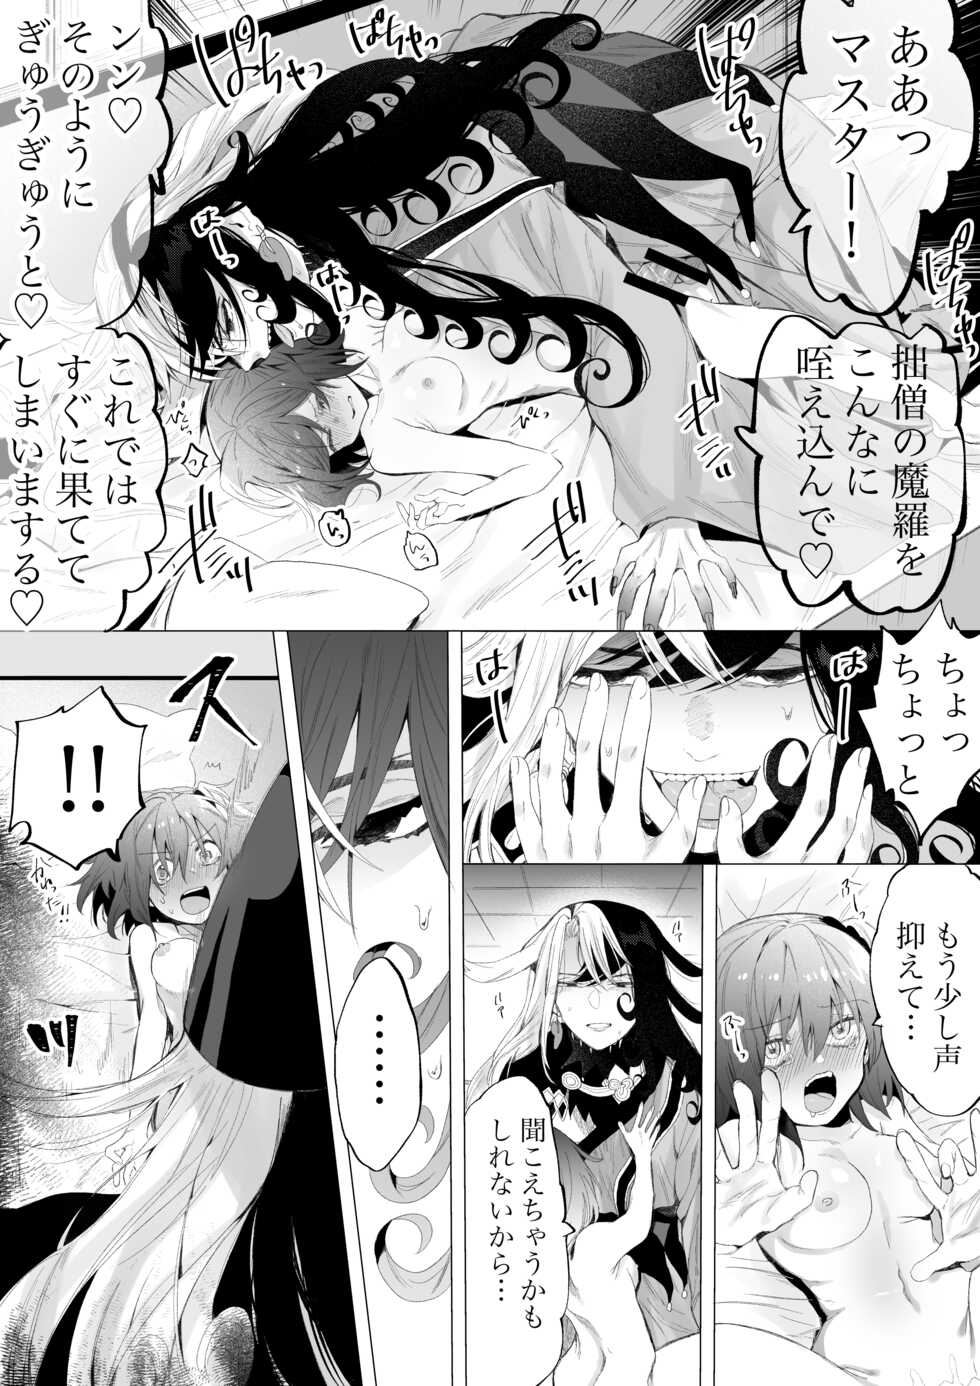 [Meika]]Rin guda ♀(-dō guda ♀) matome ③n[ fate grand order ) - Page 22